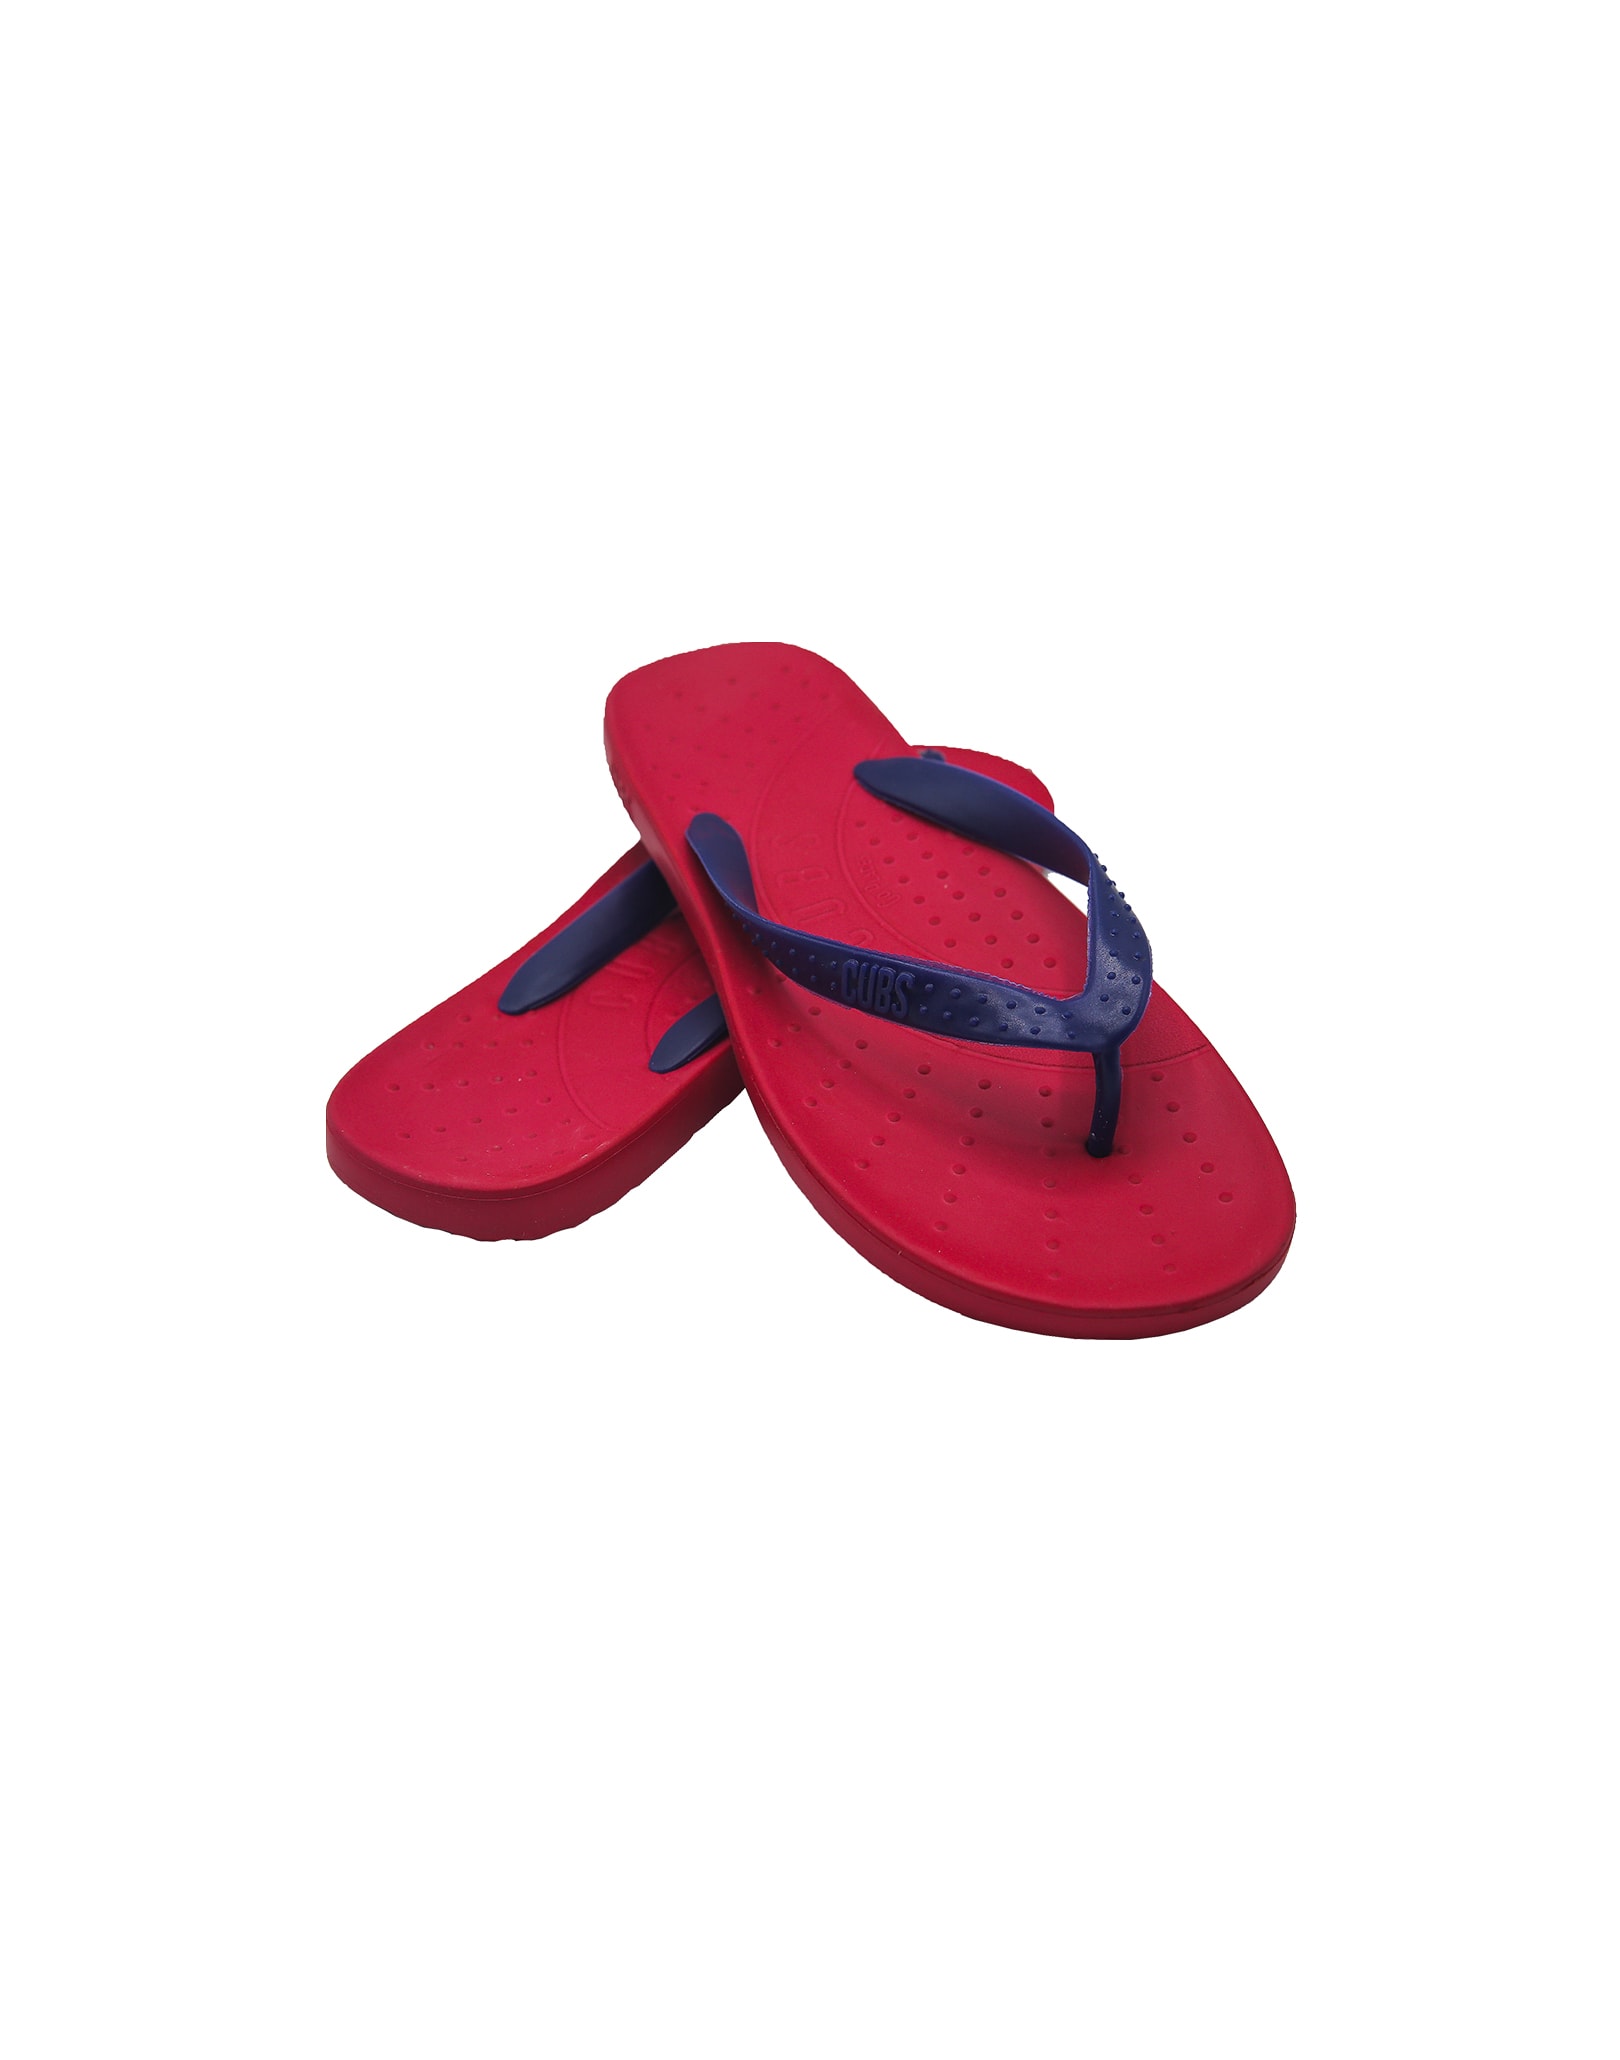 red bottom flip flops